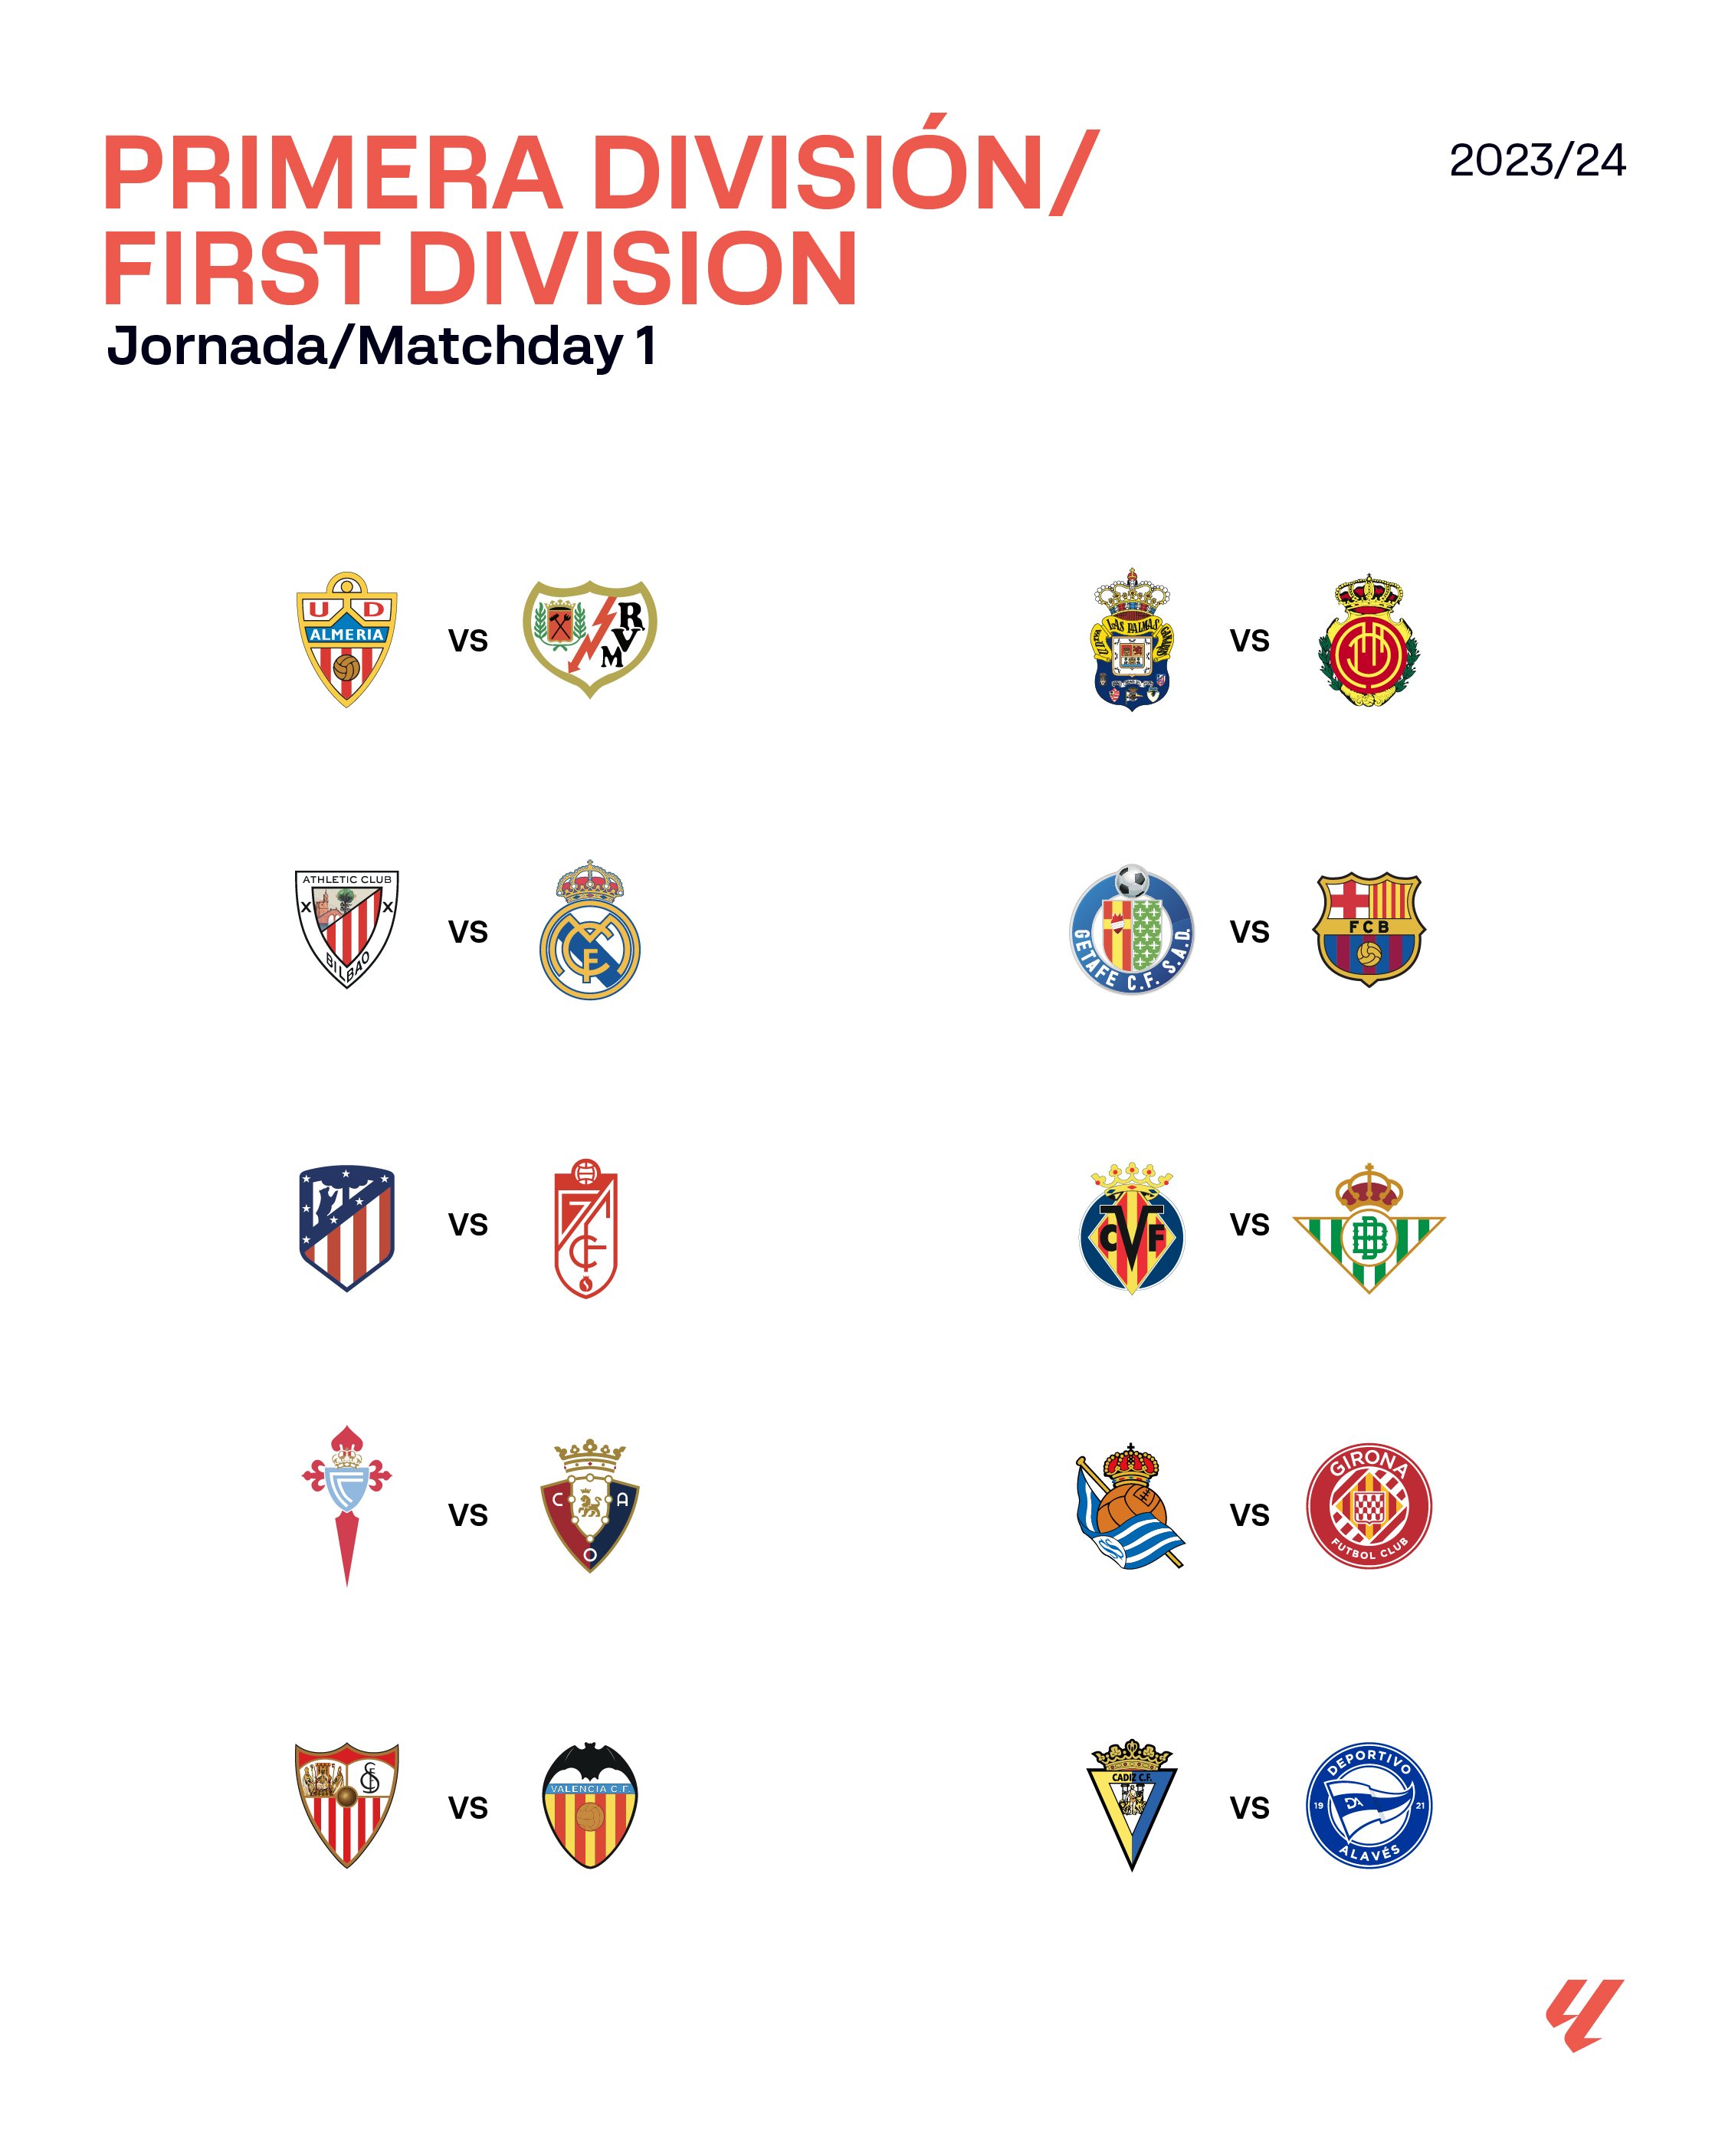 La Liga teams for the 2023/24 season